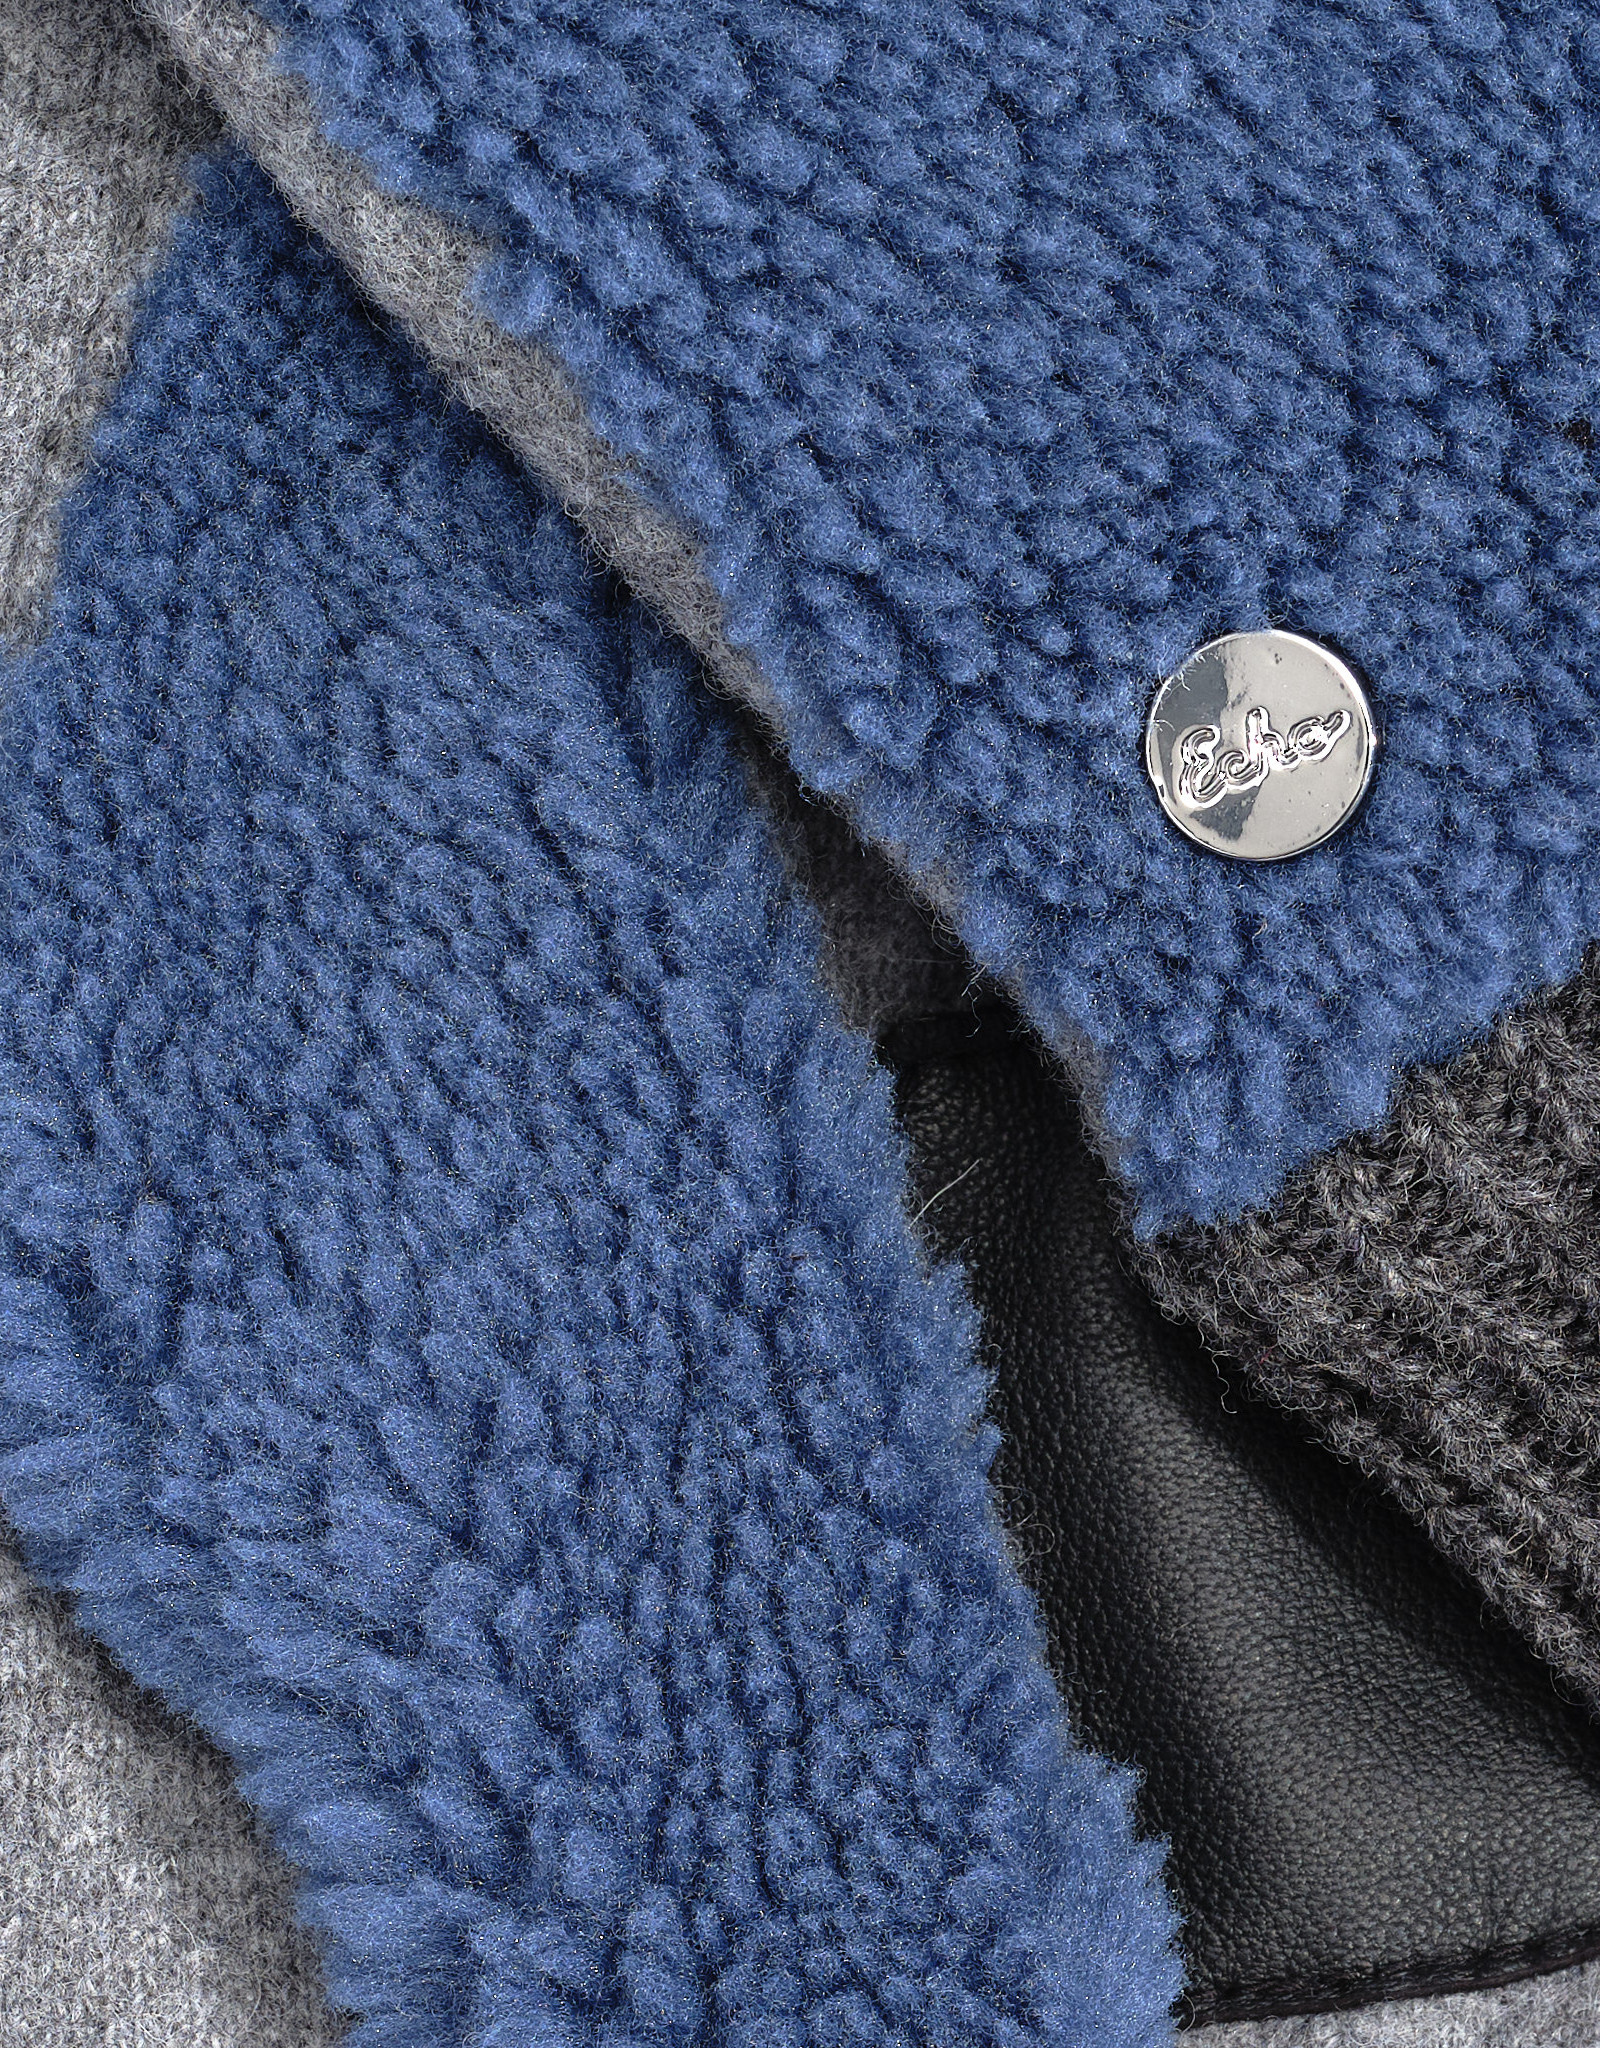 Sodalite Sherpa Glove w/Knit Cuff